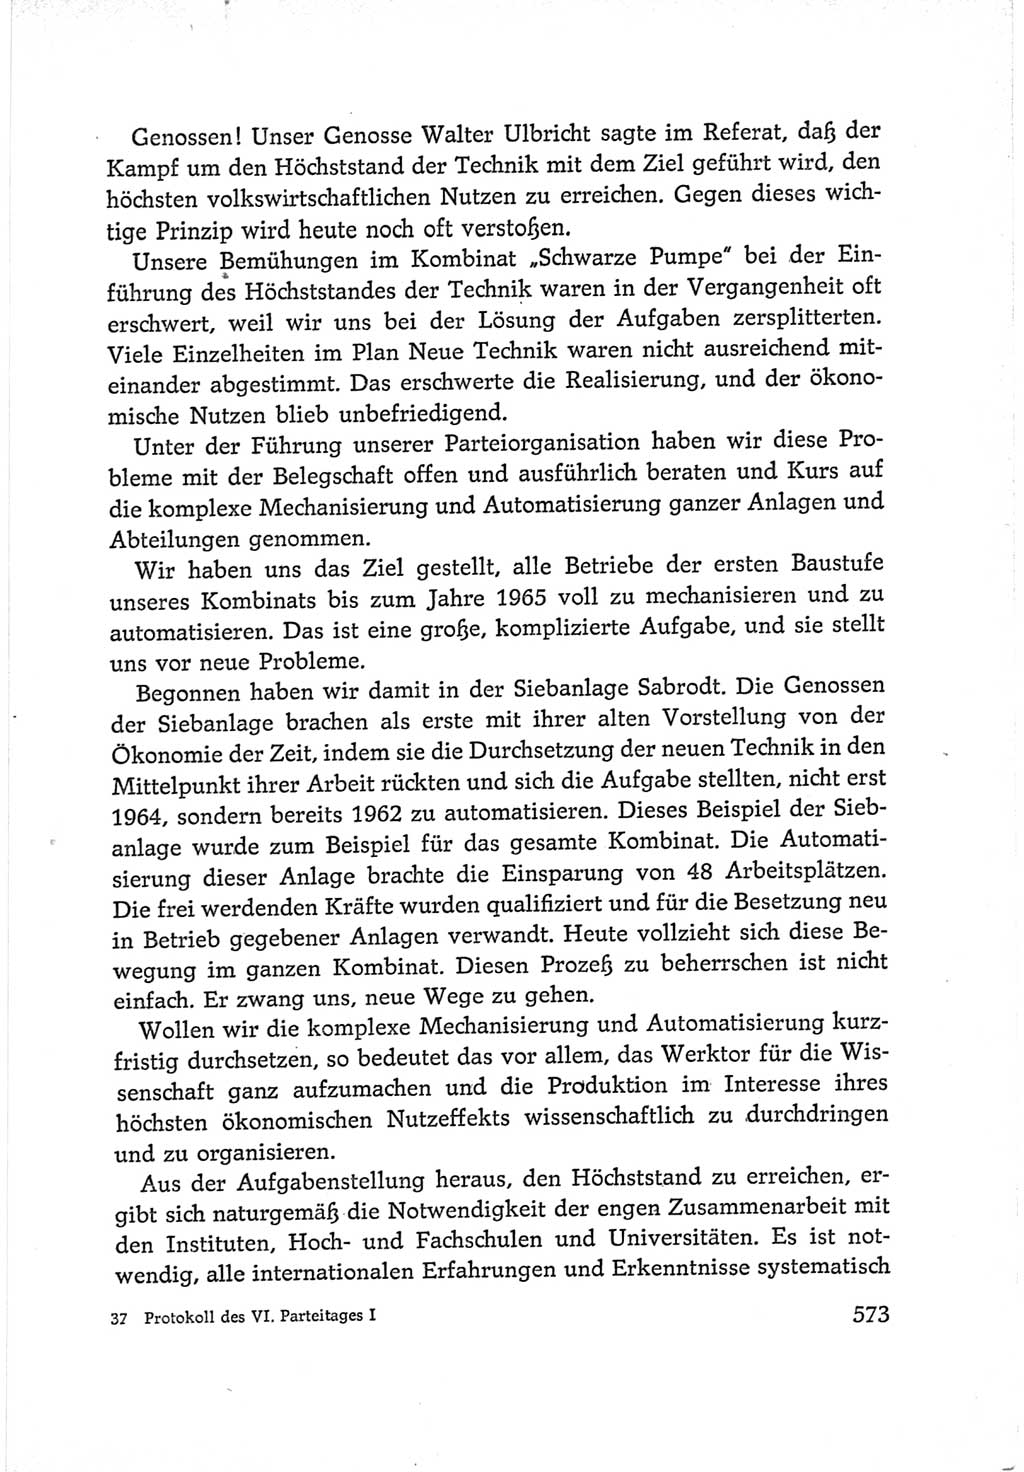 Protokoll der Verhandlungen des Ⅵ. Parteitages der Sozialistischen Einheitspartei Deutschlands (SED) [Deutsche Demokratische Republik (DDR)] 1963, Band Ⅰ, Seite 573 (Prot. Verh. Ⅵ. PT SED DDR 1963, Bd. Ⅰ, S. 573)